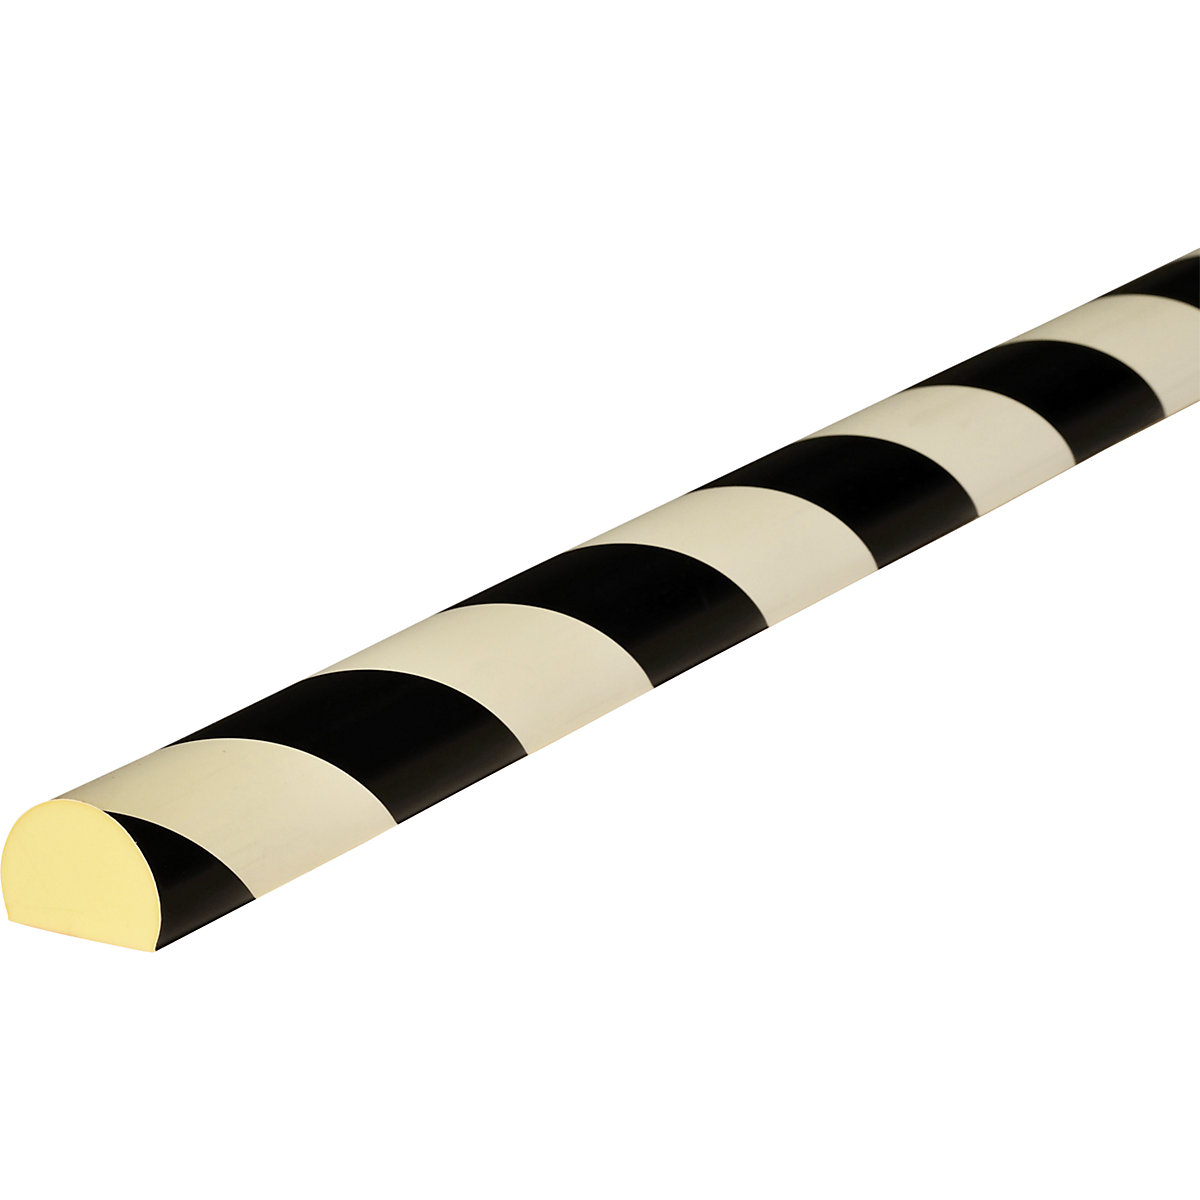 Knuffi®-oppervlaktebescherming – SHG, type C, stuk van 1 m, zwart/lang nalichtend-22